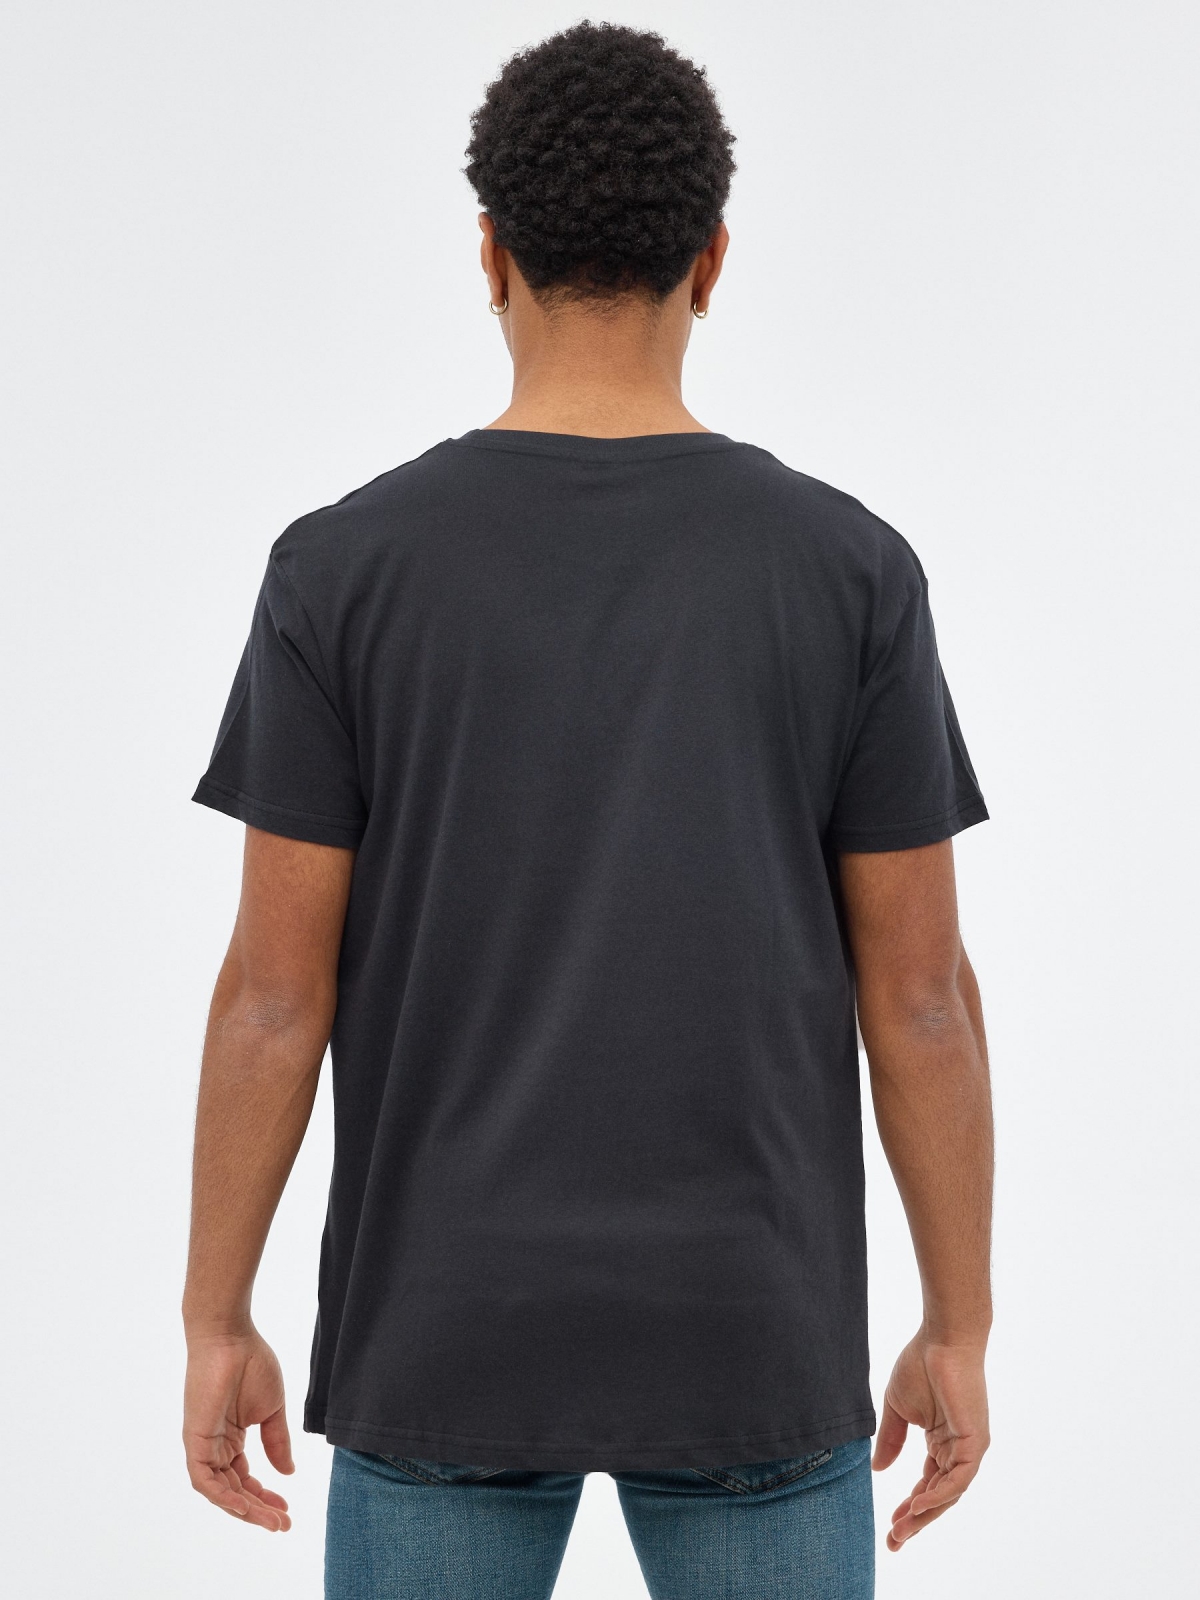 T-shirt preta Naruto preto vista meia traseira